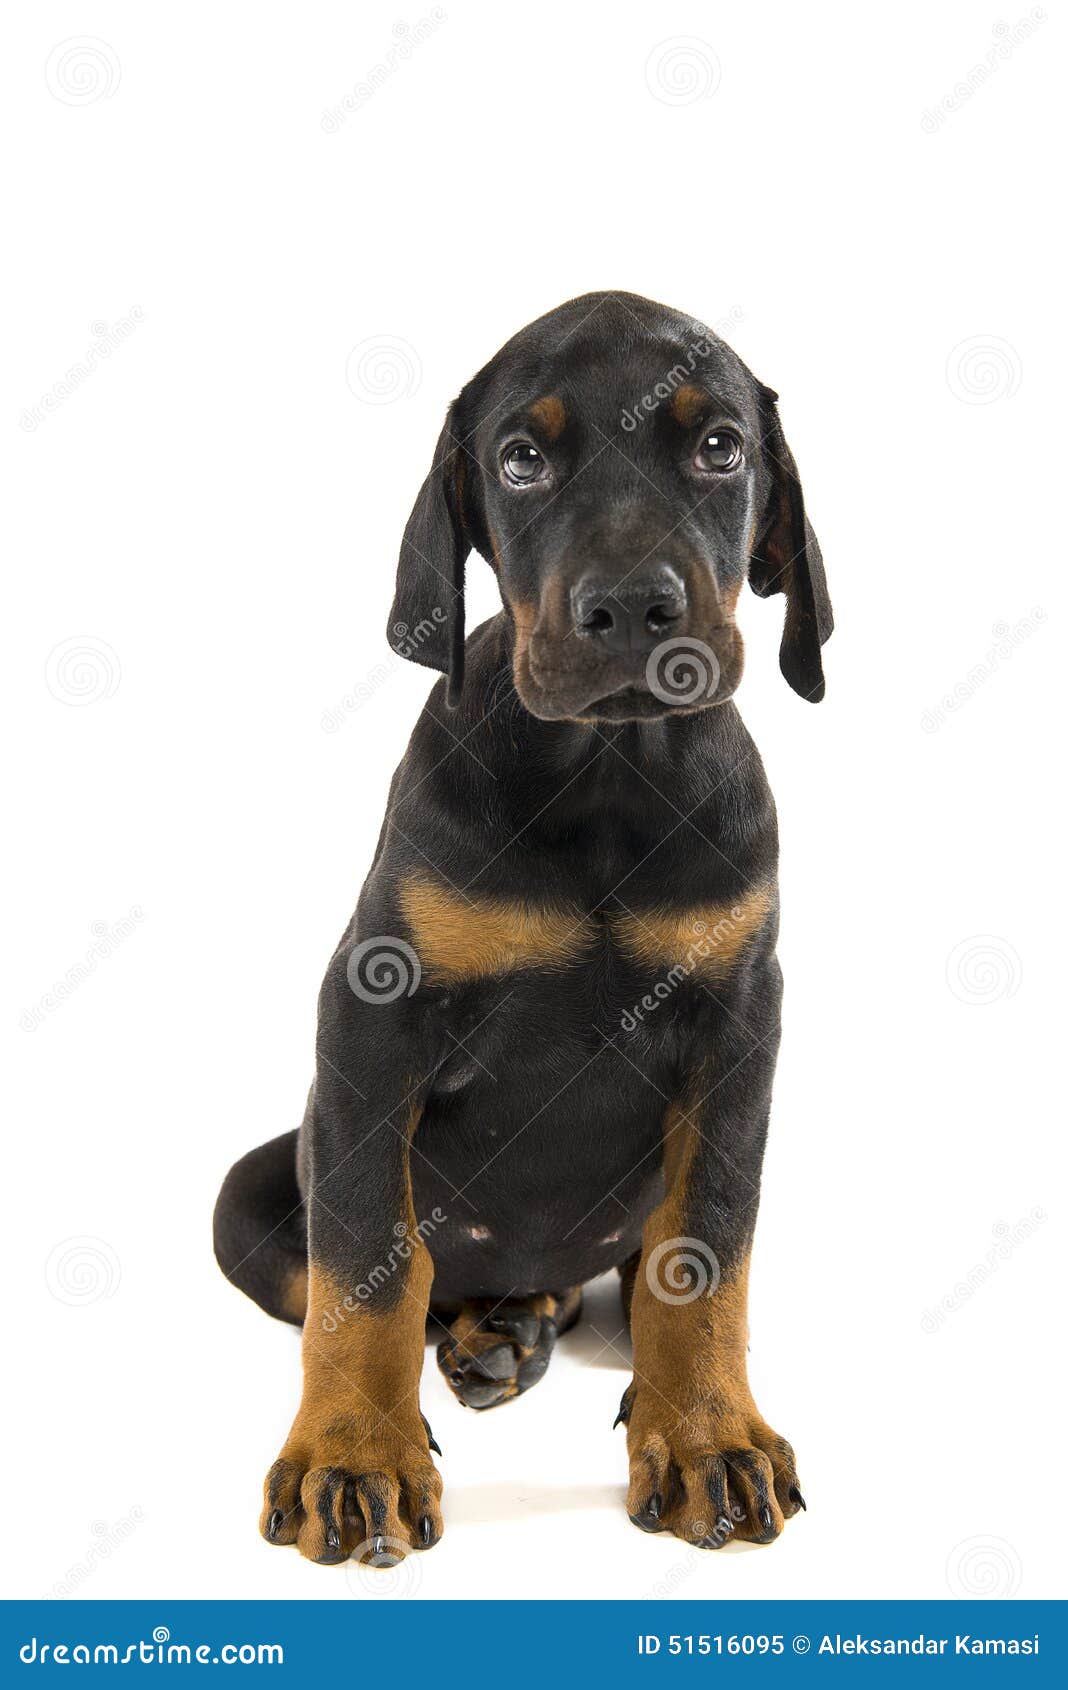 puppy of doberman pinscher